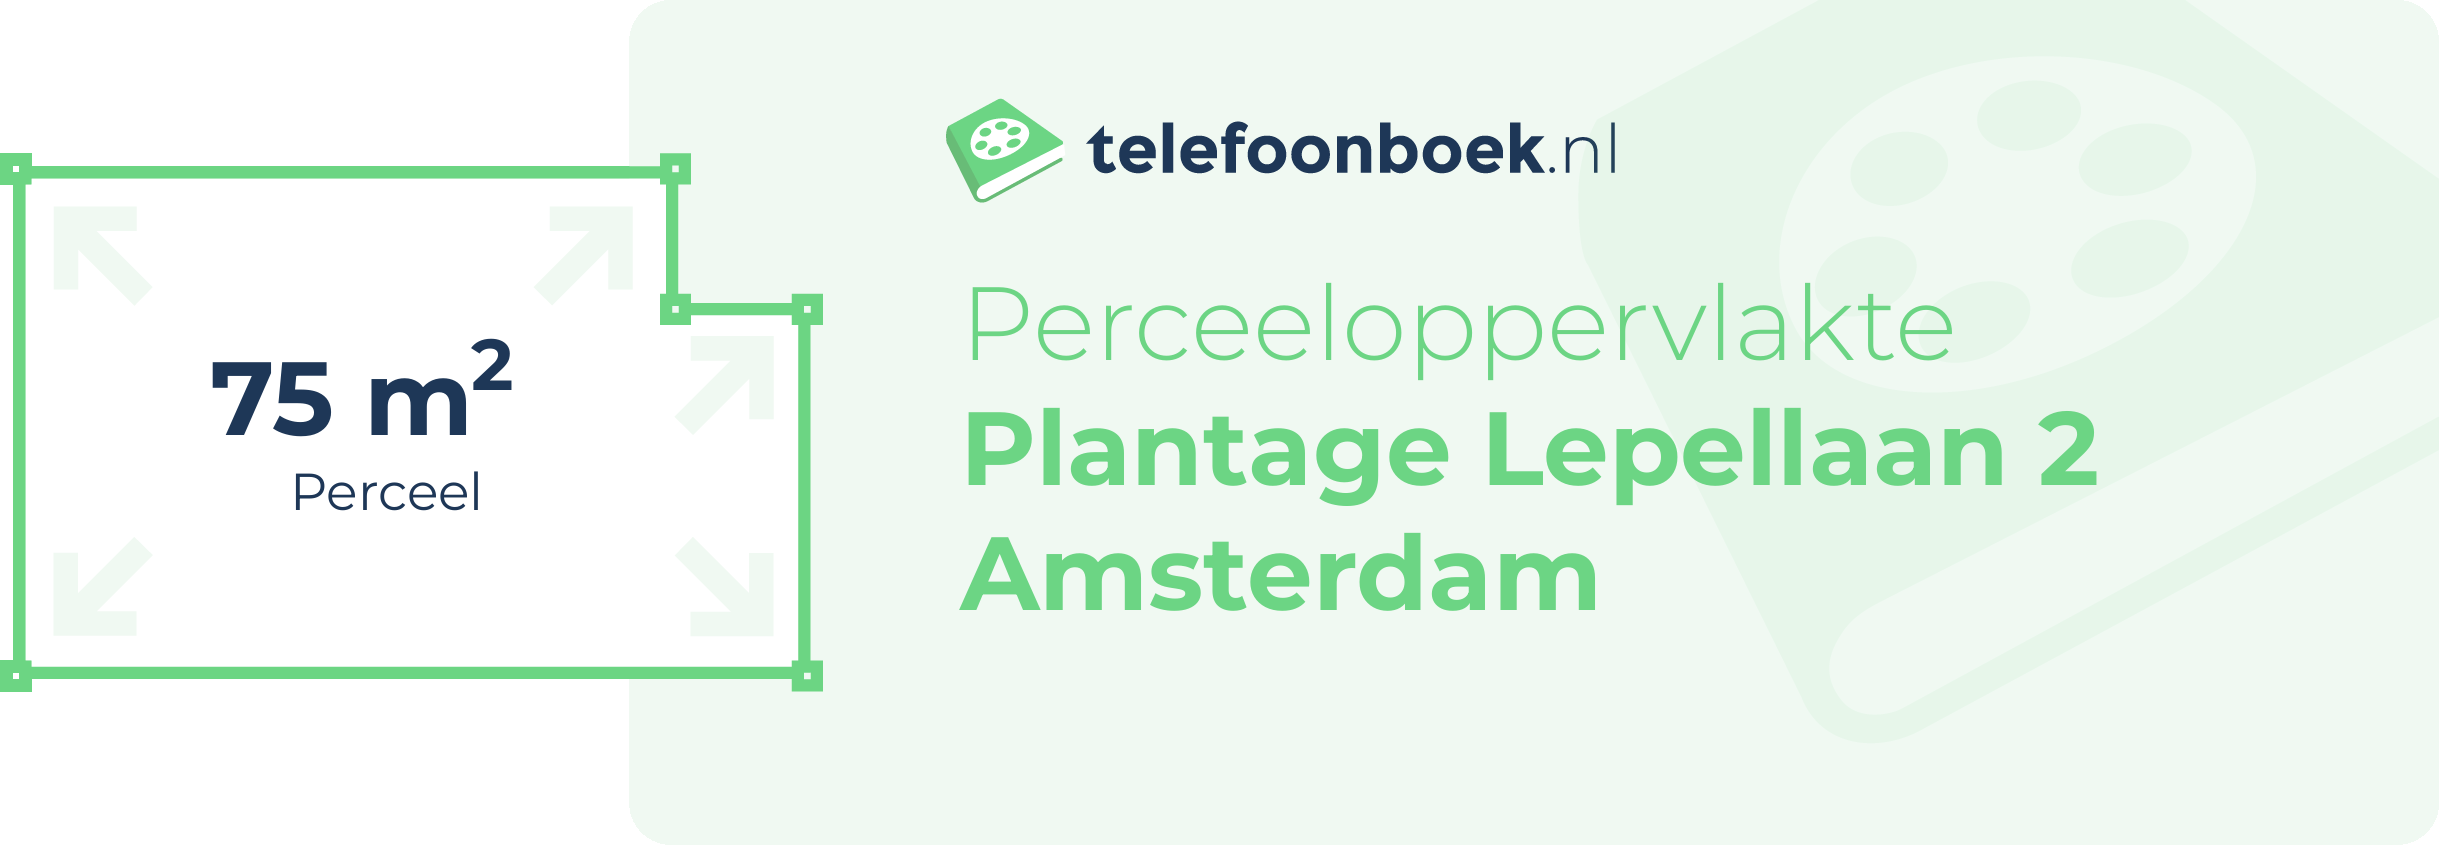 Perceeloppervlakte Plantage Lepellaan 2 Amsterdam